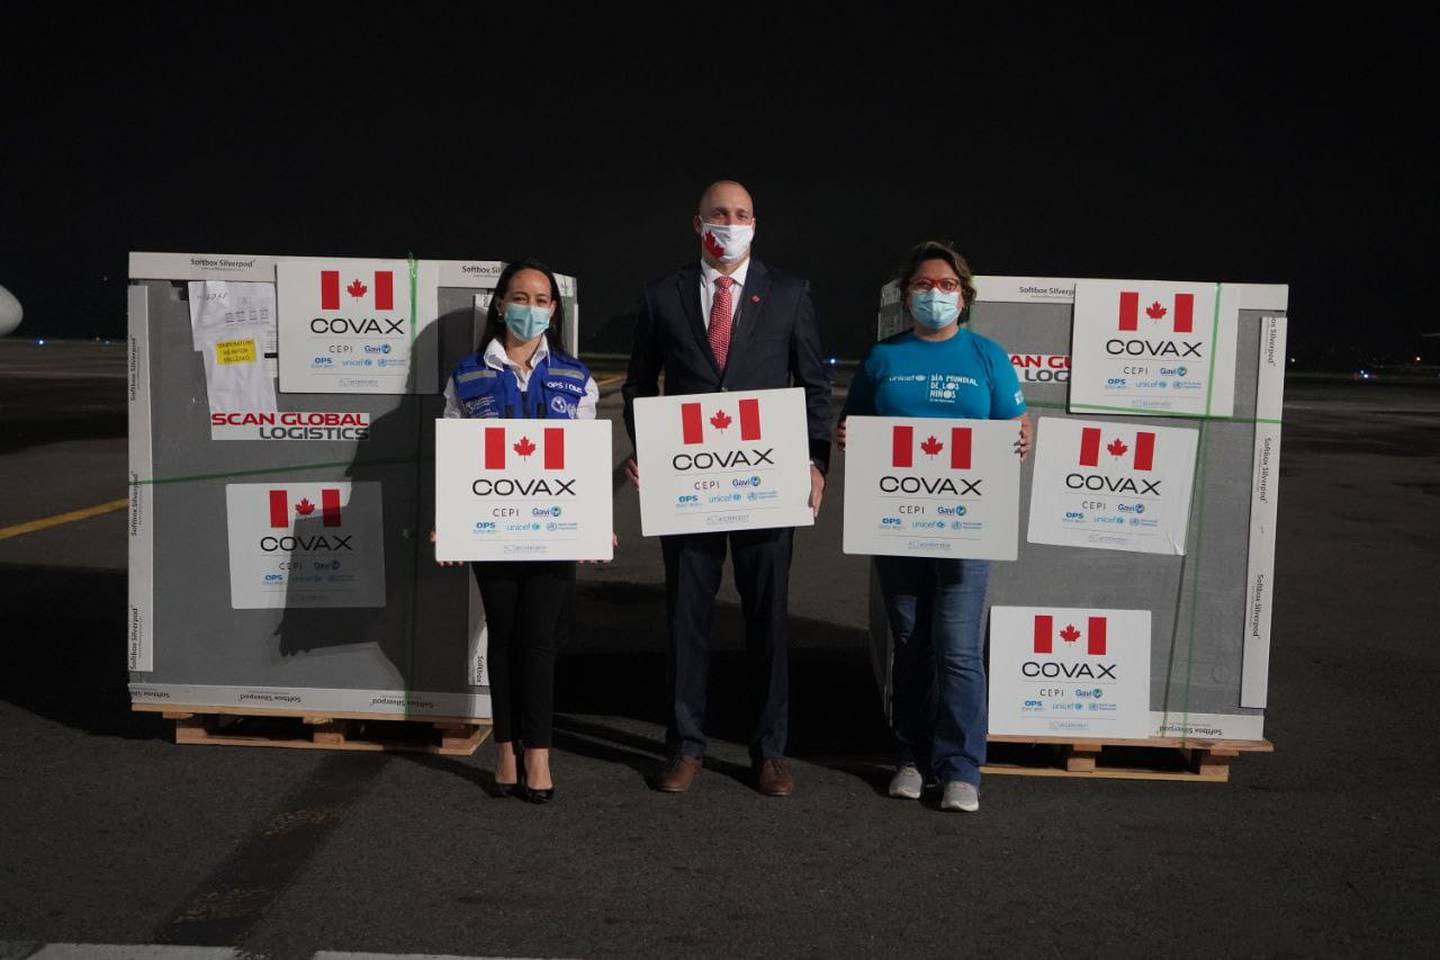 Dos días antes de lo que se esperaba, este viernes 3 de setiembre, ingresó al país vía aérea la donación de 319.200 vacunas contra el covid-19 que nos hizo el gobierno de Canadá, por medio del convenio COVAX